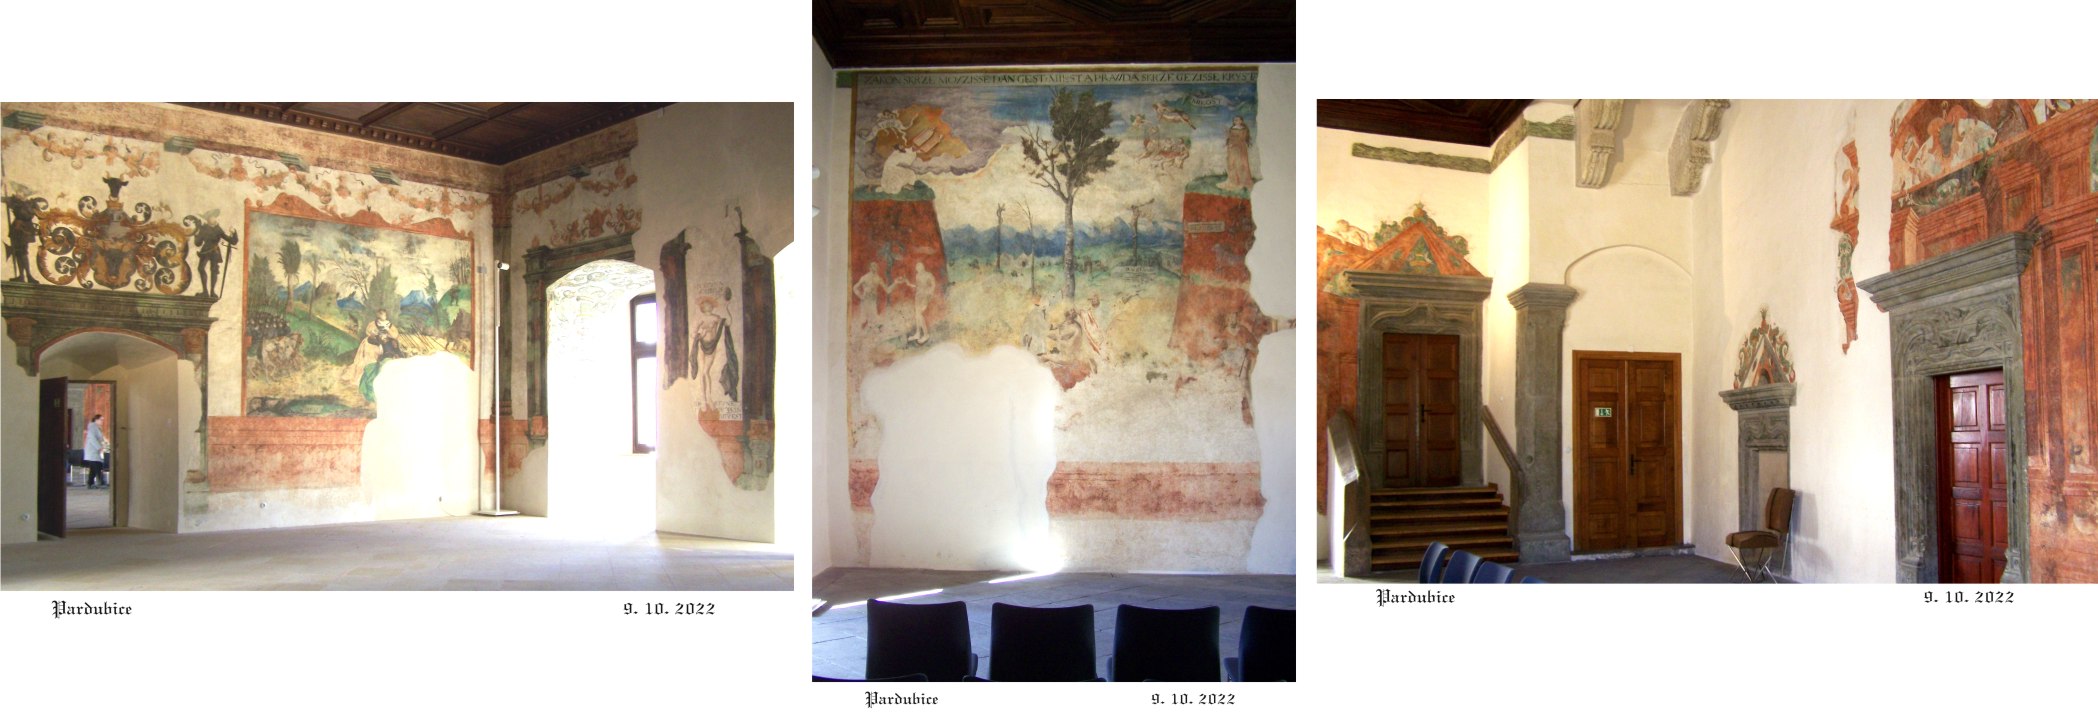 Obnovené renesanční fresky, nejstarší u nás.